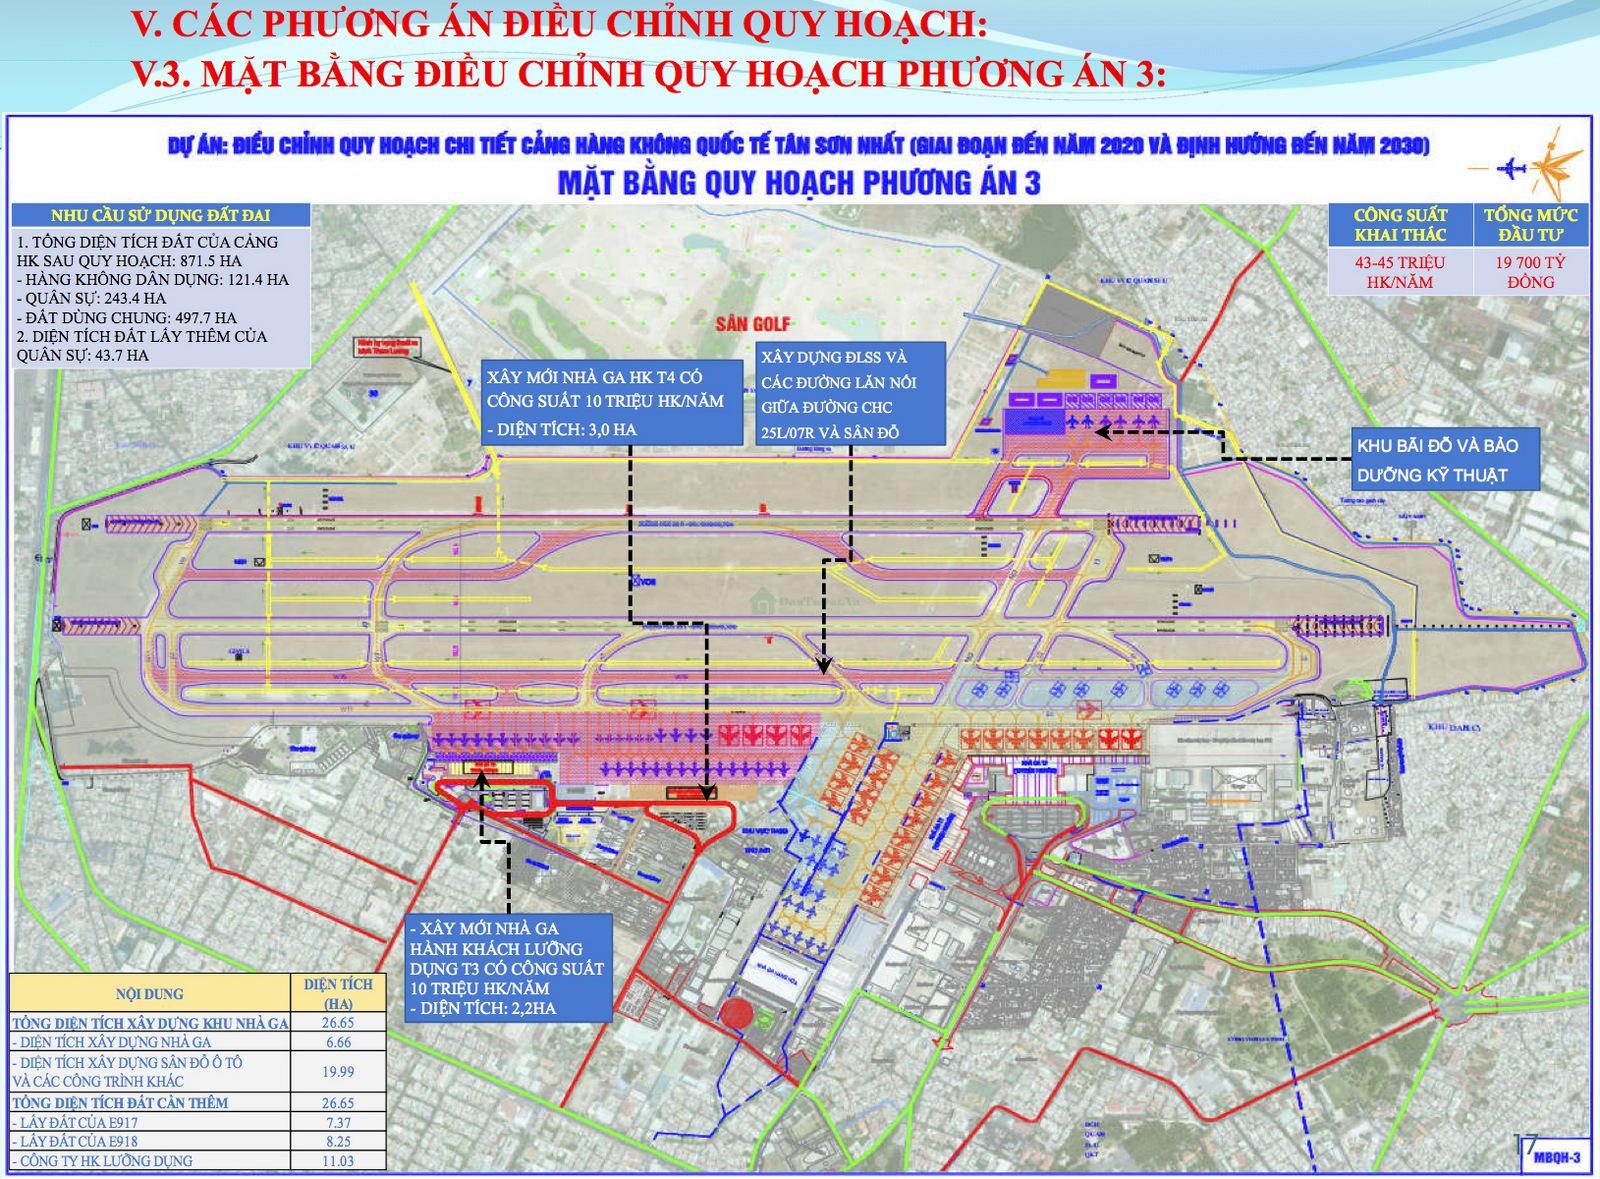 Các ý kiến phản đối Dự án xây mới Sân bay Long Thành hay nâng cấp Tân Sơn Nhất